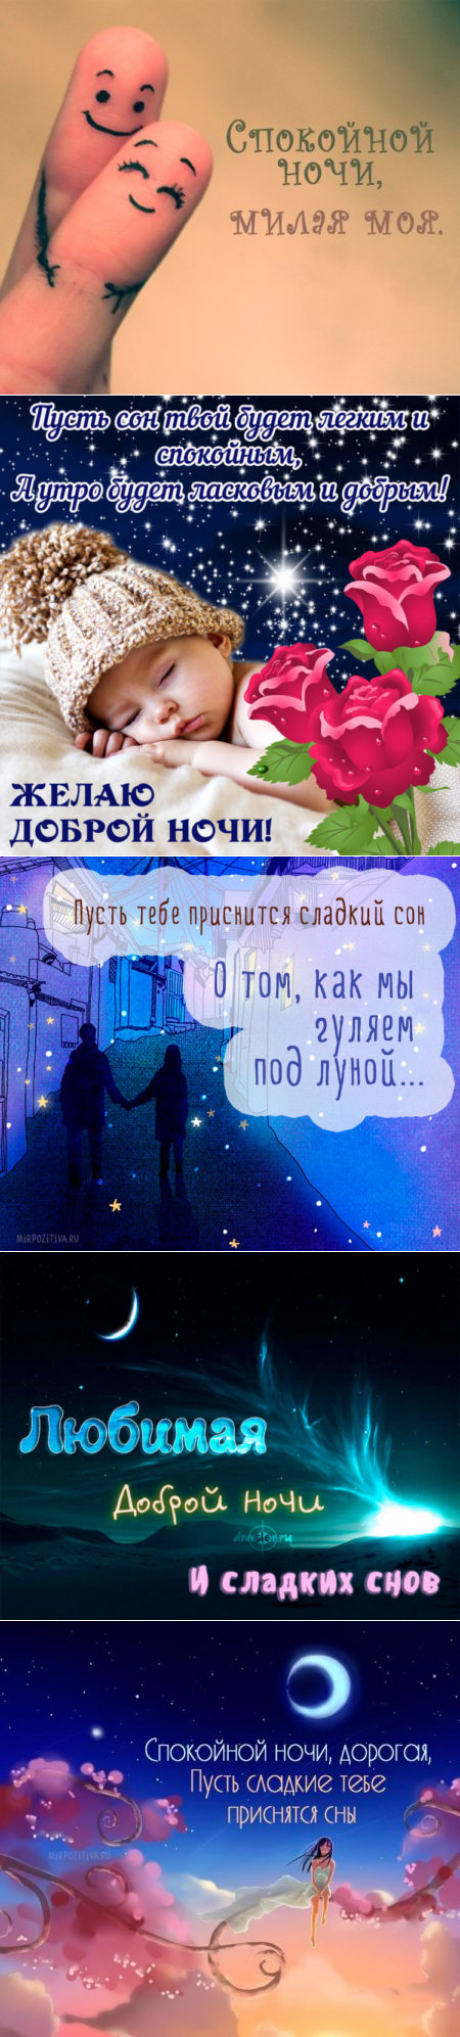 Картинки спокойной ночи любимая: красивые открытки с пожеланиями сладких снов для девушки